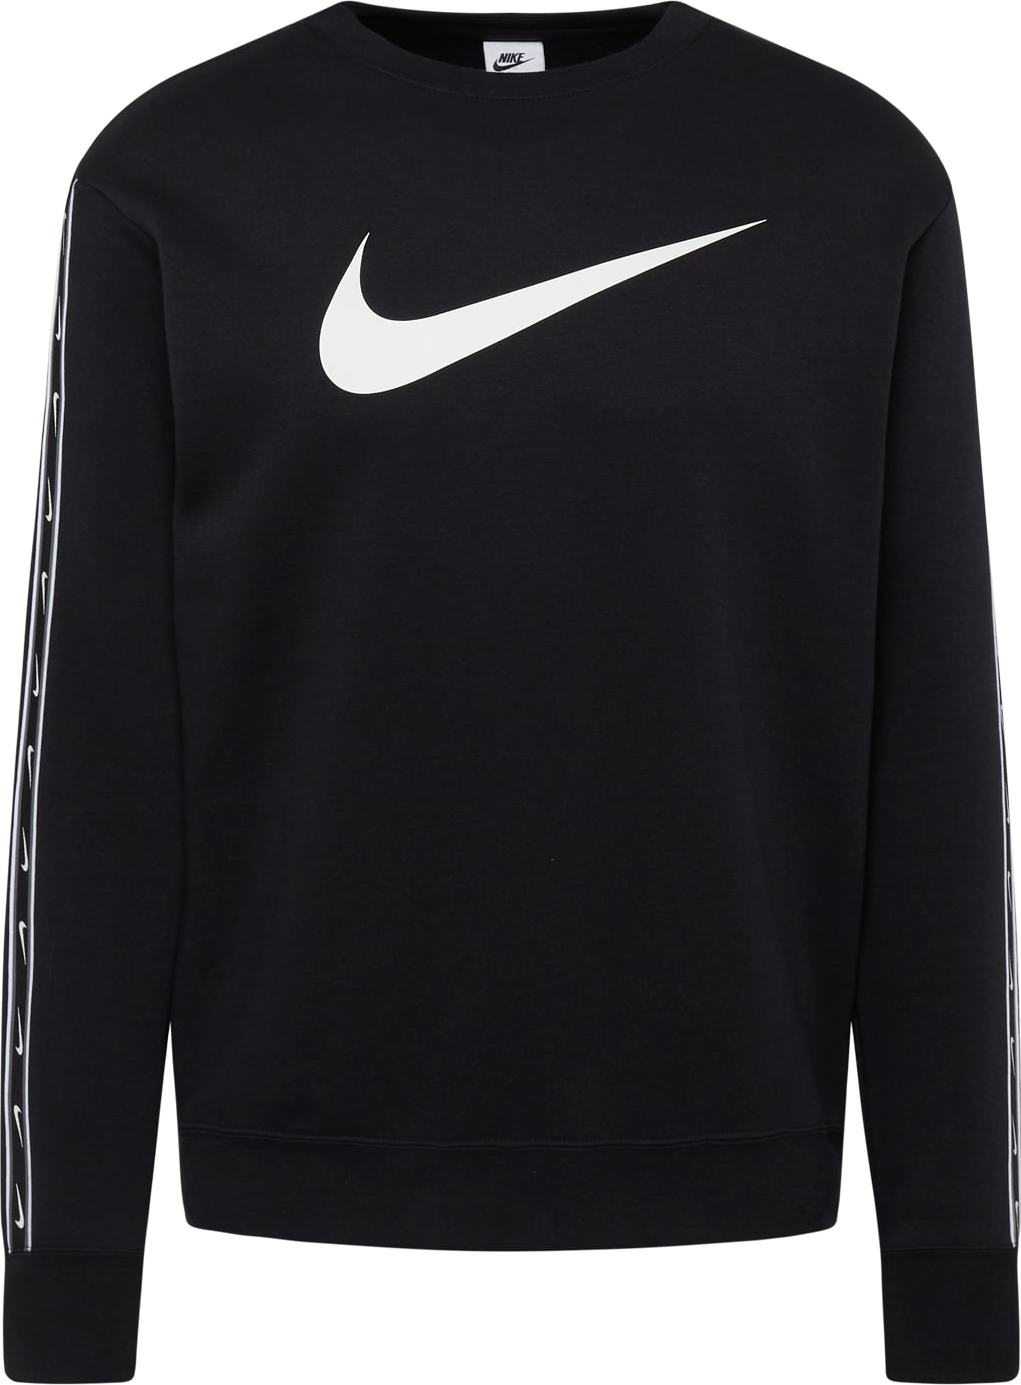 Mikina Nike Sportswear šedá / černá / bílá